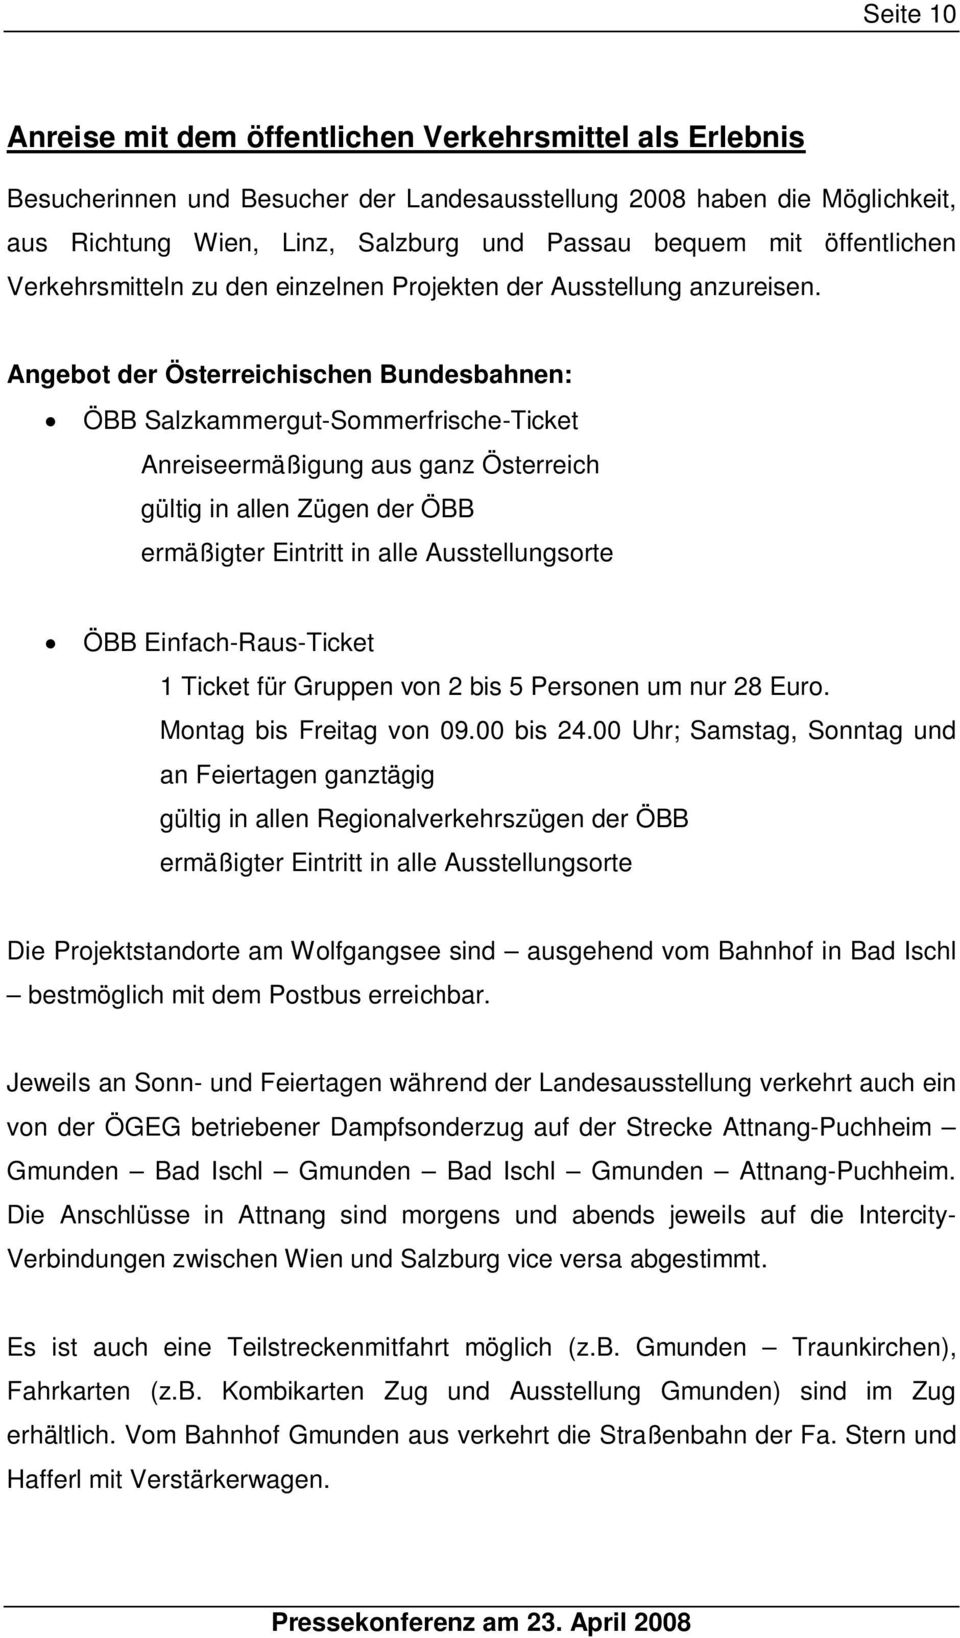 Angebot der Österreichischen Bundesbahnen: ÖBB Salzkammergut-Sommerfrische-Ticket Anreiseermäßigung aus ganz Österreich gültig in allen Zügen der ÖBB ermäßigter Eintritt in alle Ausstellungsorte ÖBB